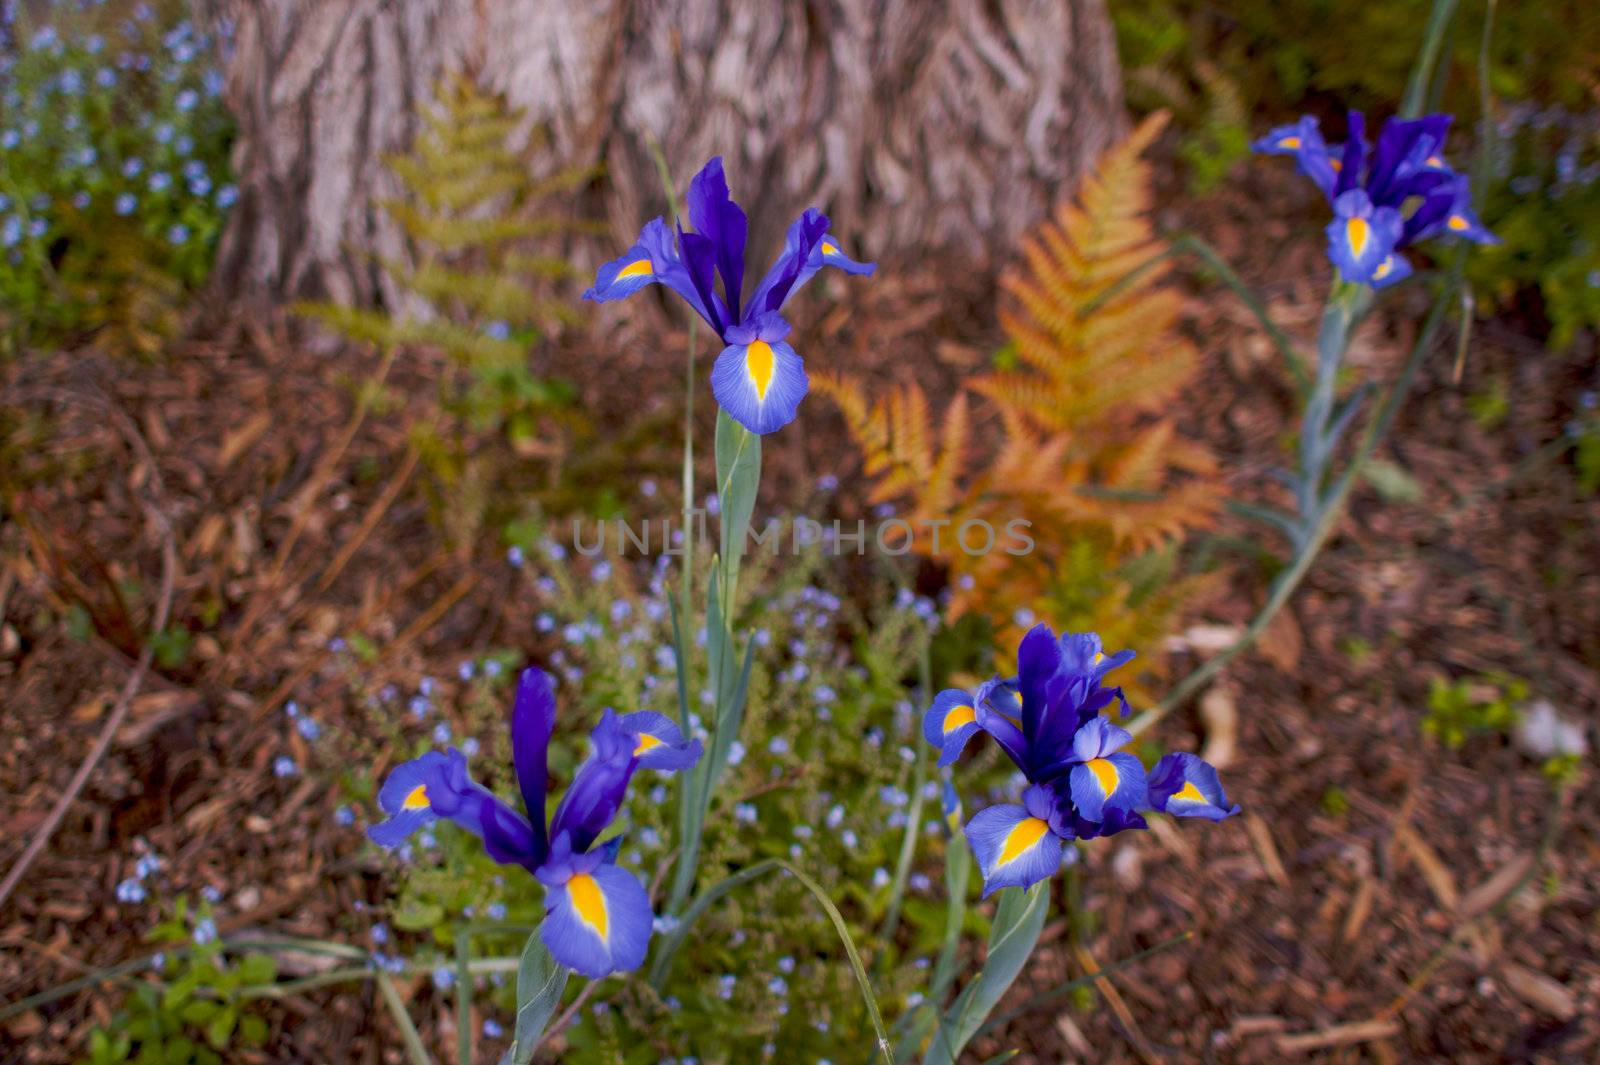 iris fern tree by bobkeenan